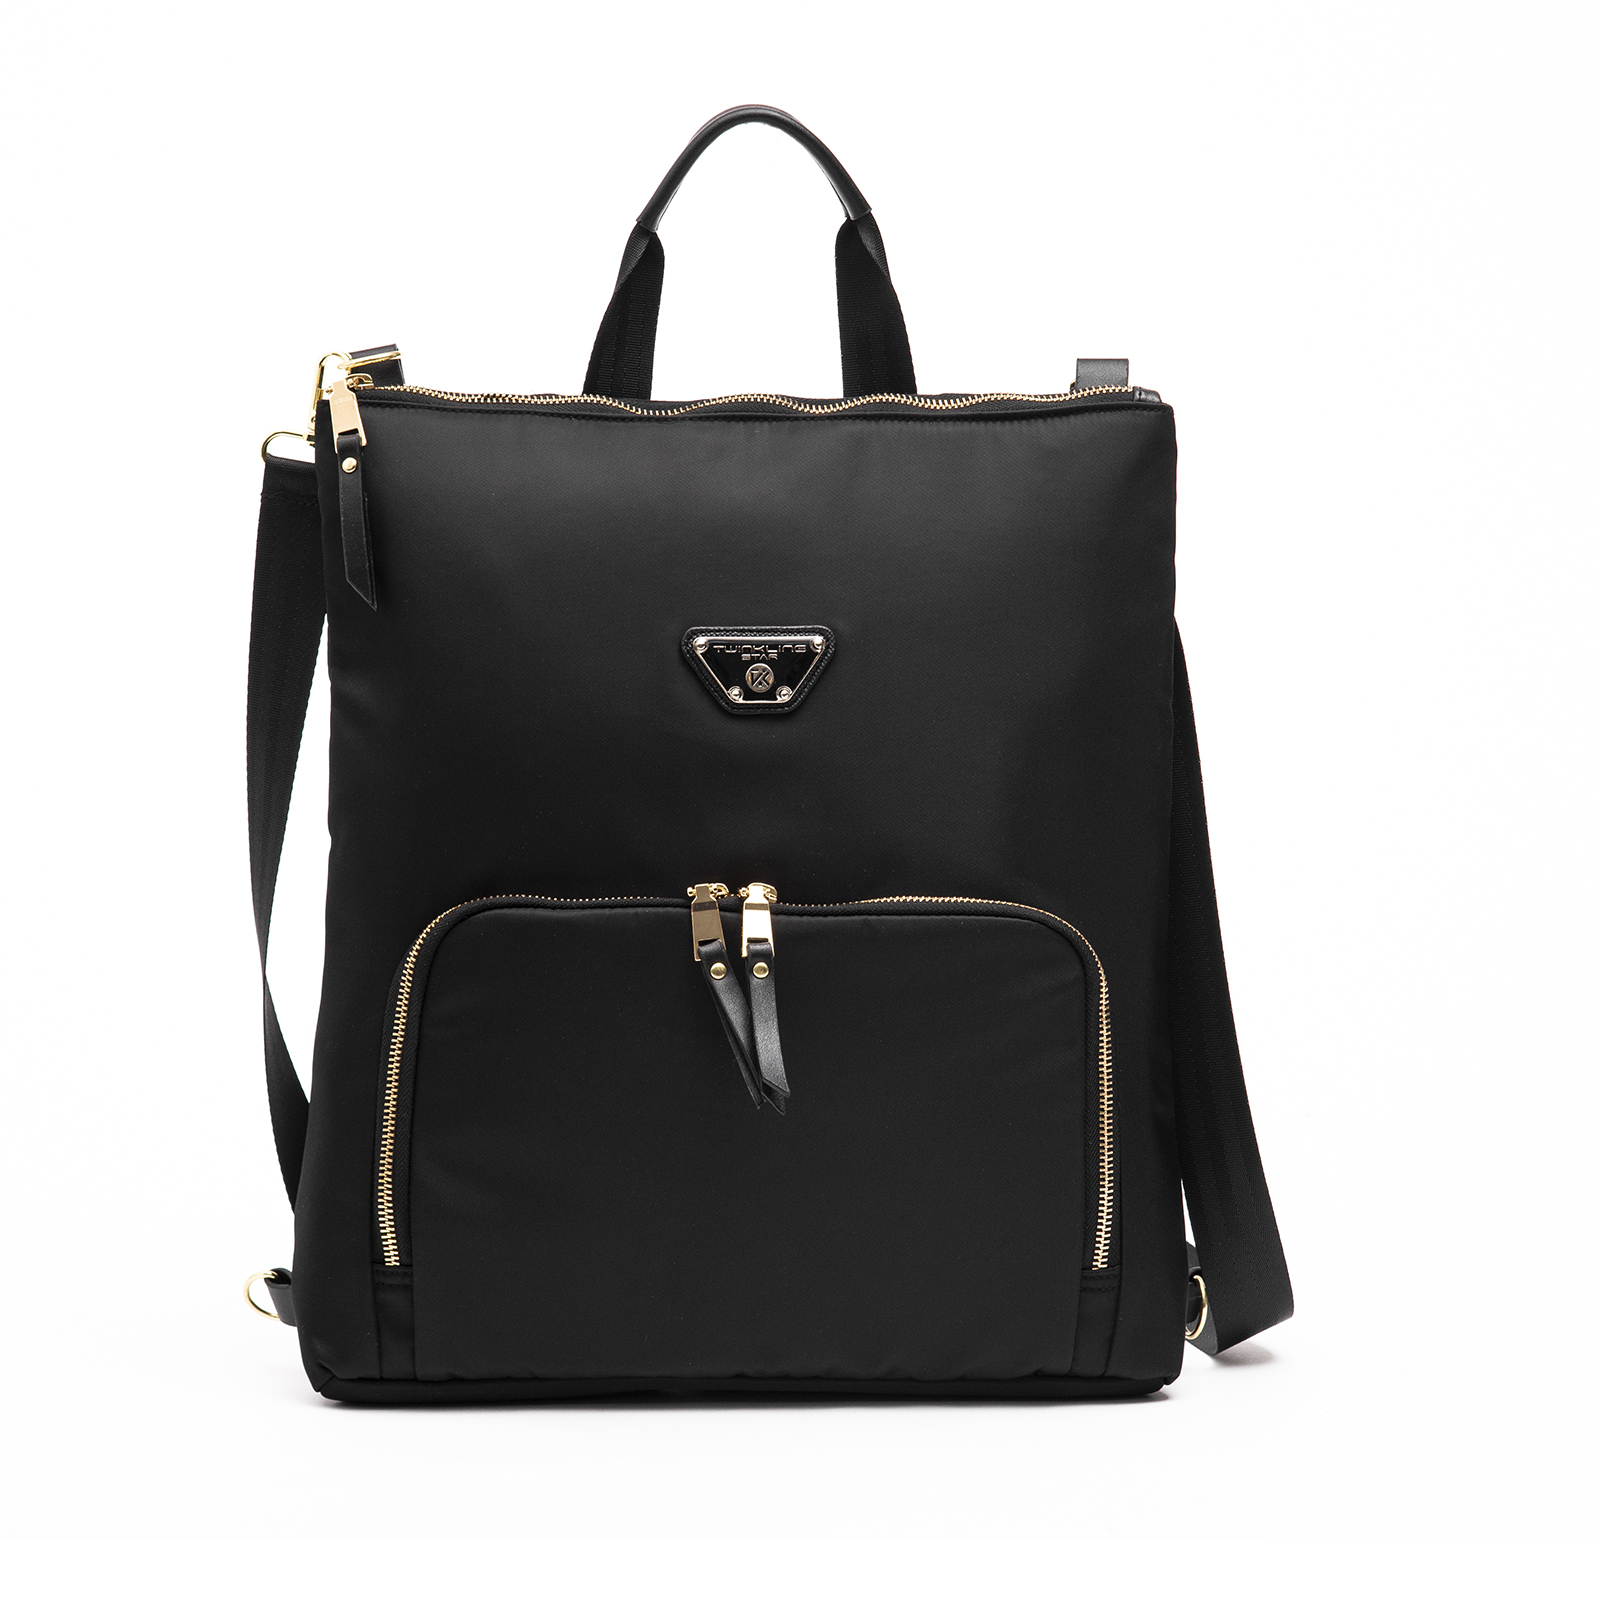 OEM Factory for Business Messenger Bag - Fashion simple black woman shoulder bag – Twinkling Star